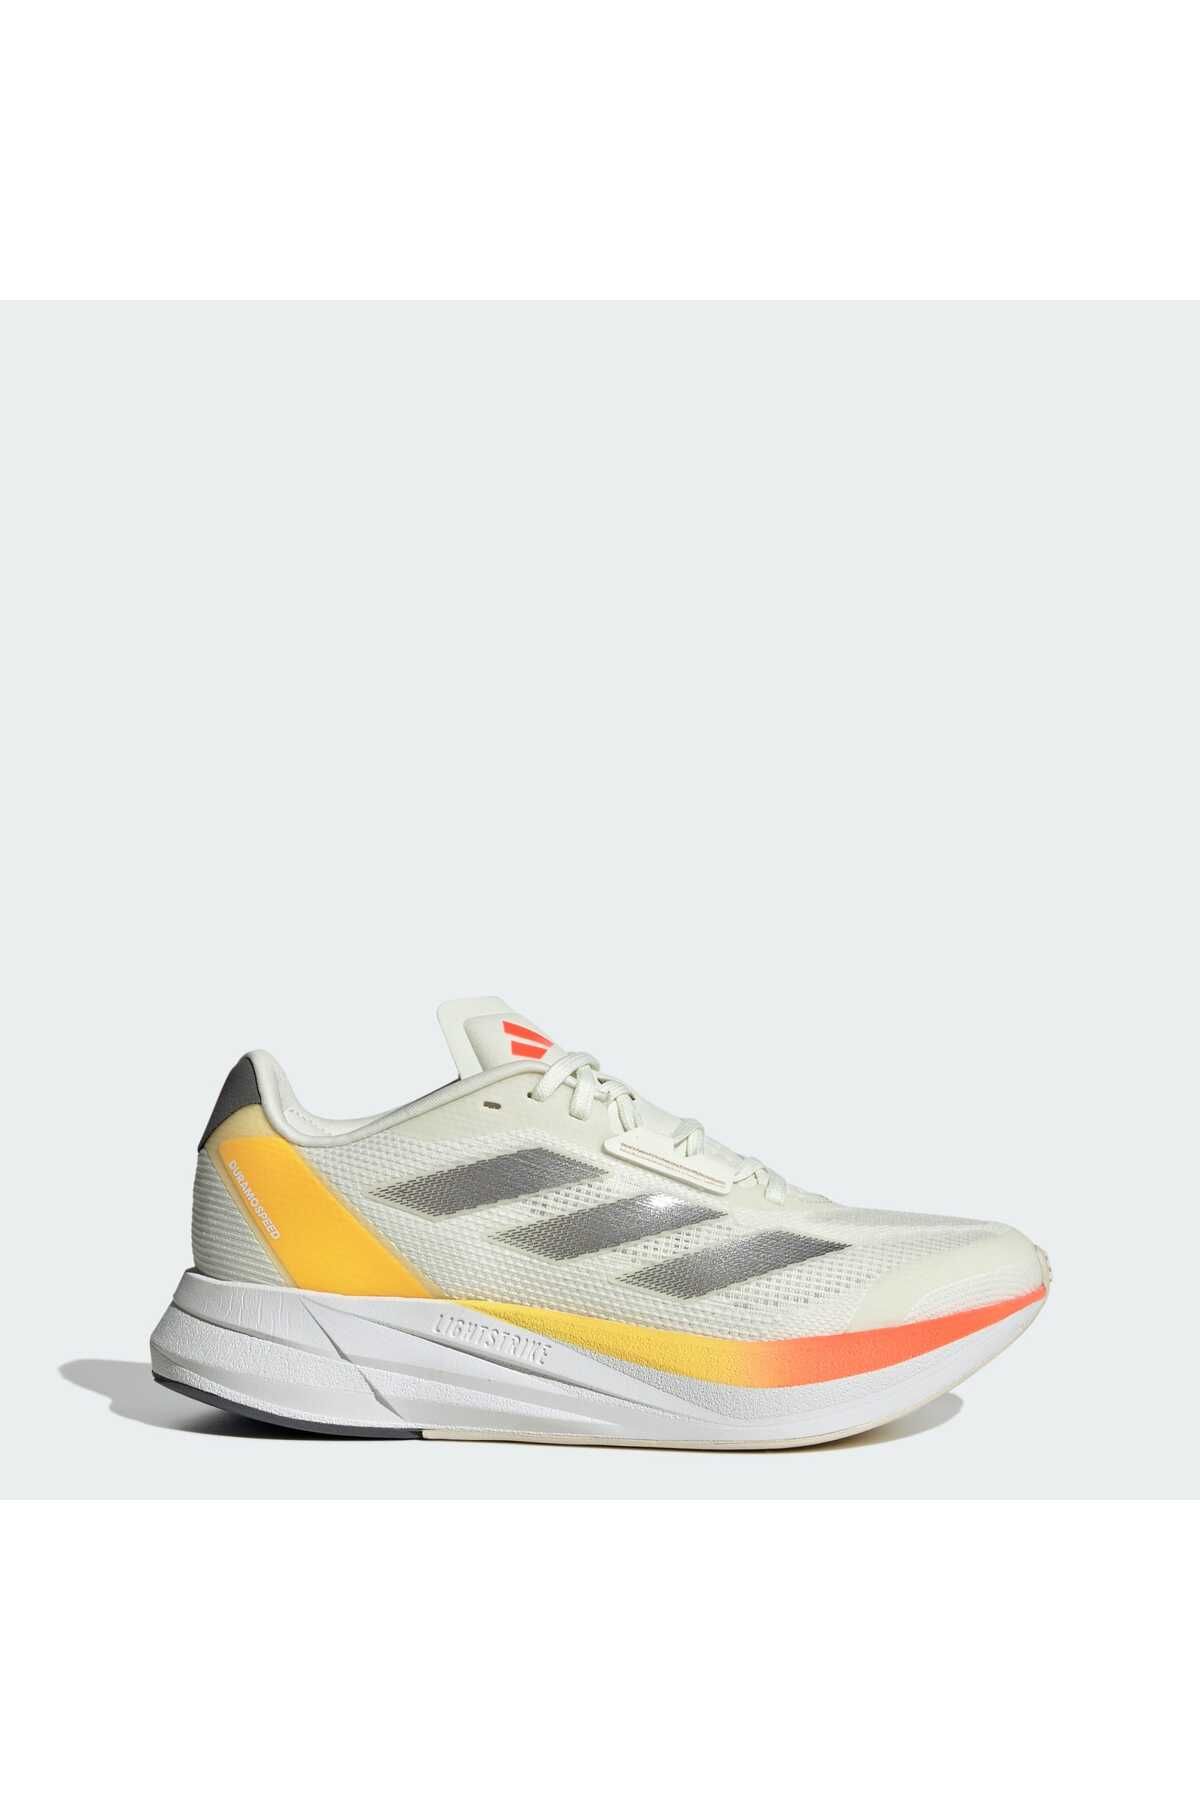 adidas Duramo Speed M Erkek Koşu Ayakkabısı Ie5477